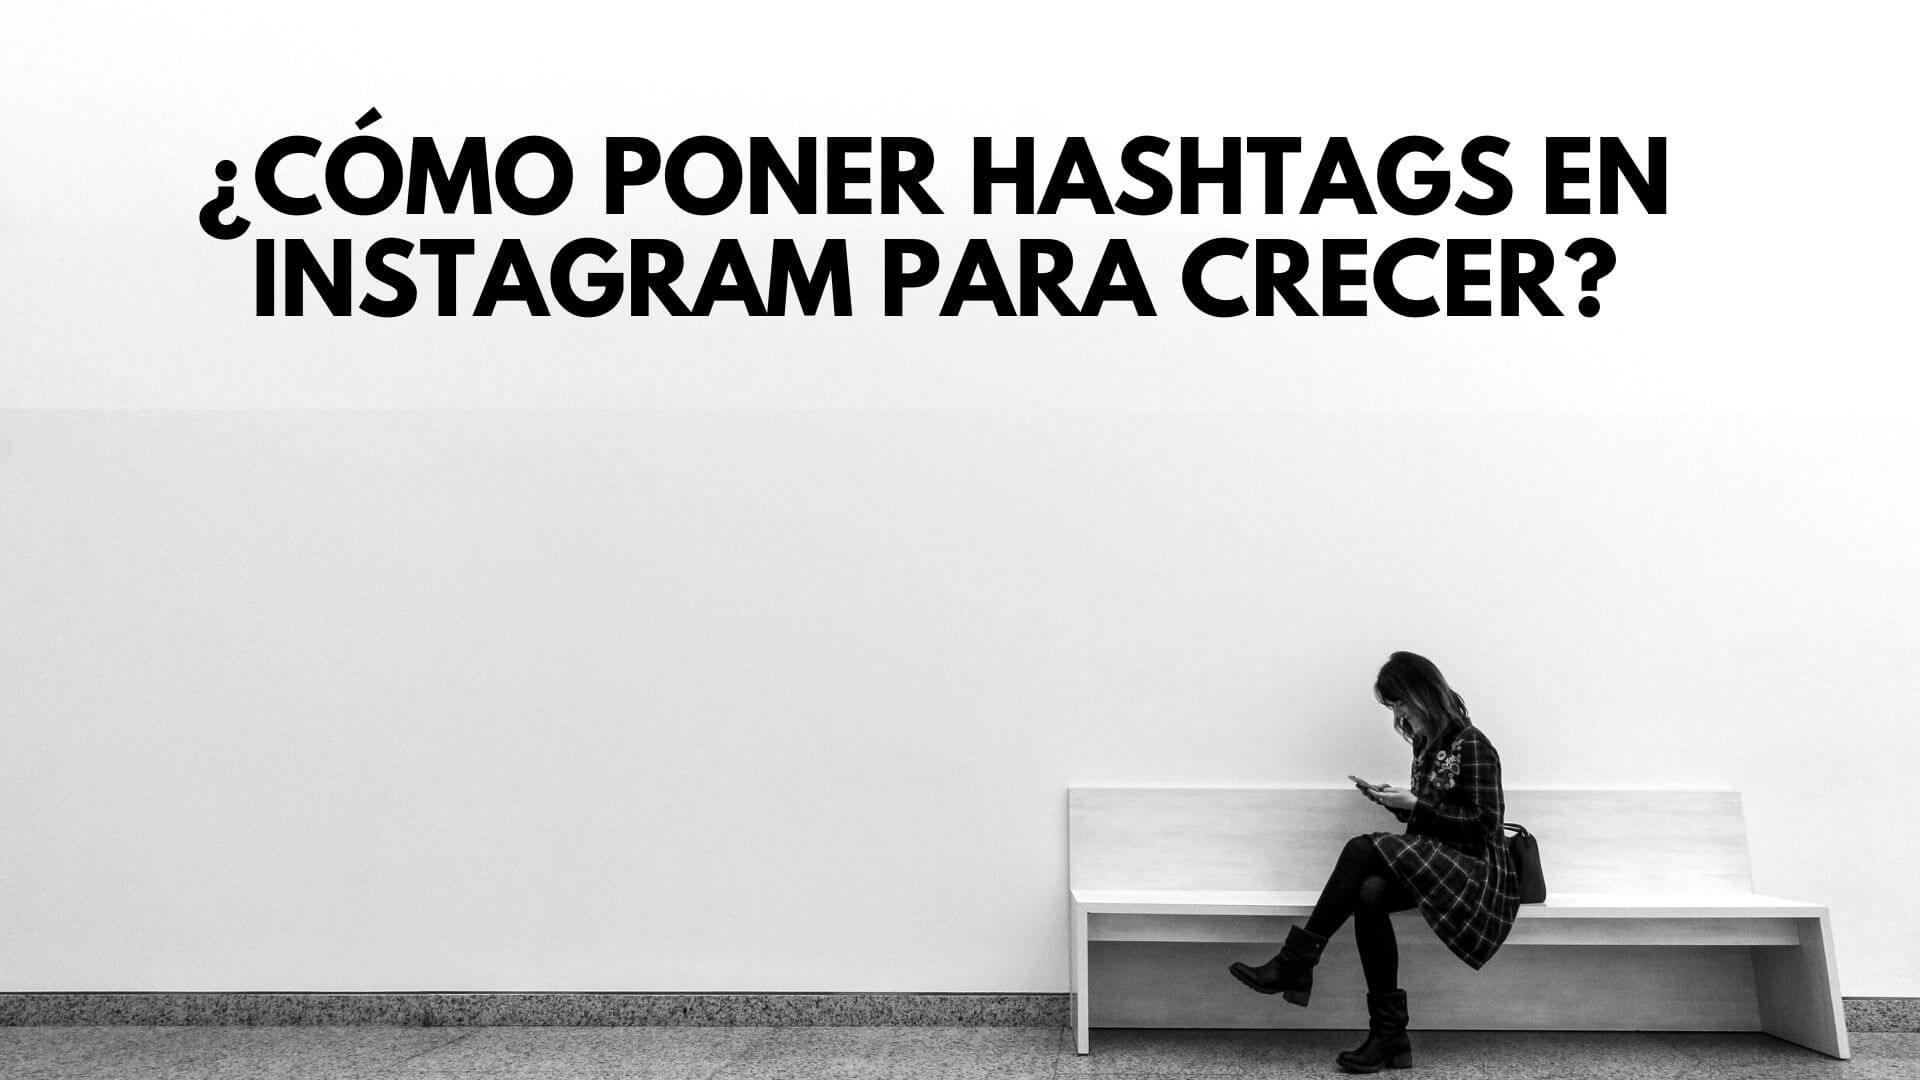 Cómo poner hashtags en Instagram para crecer en seguidores